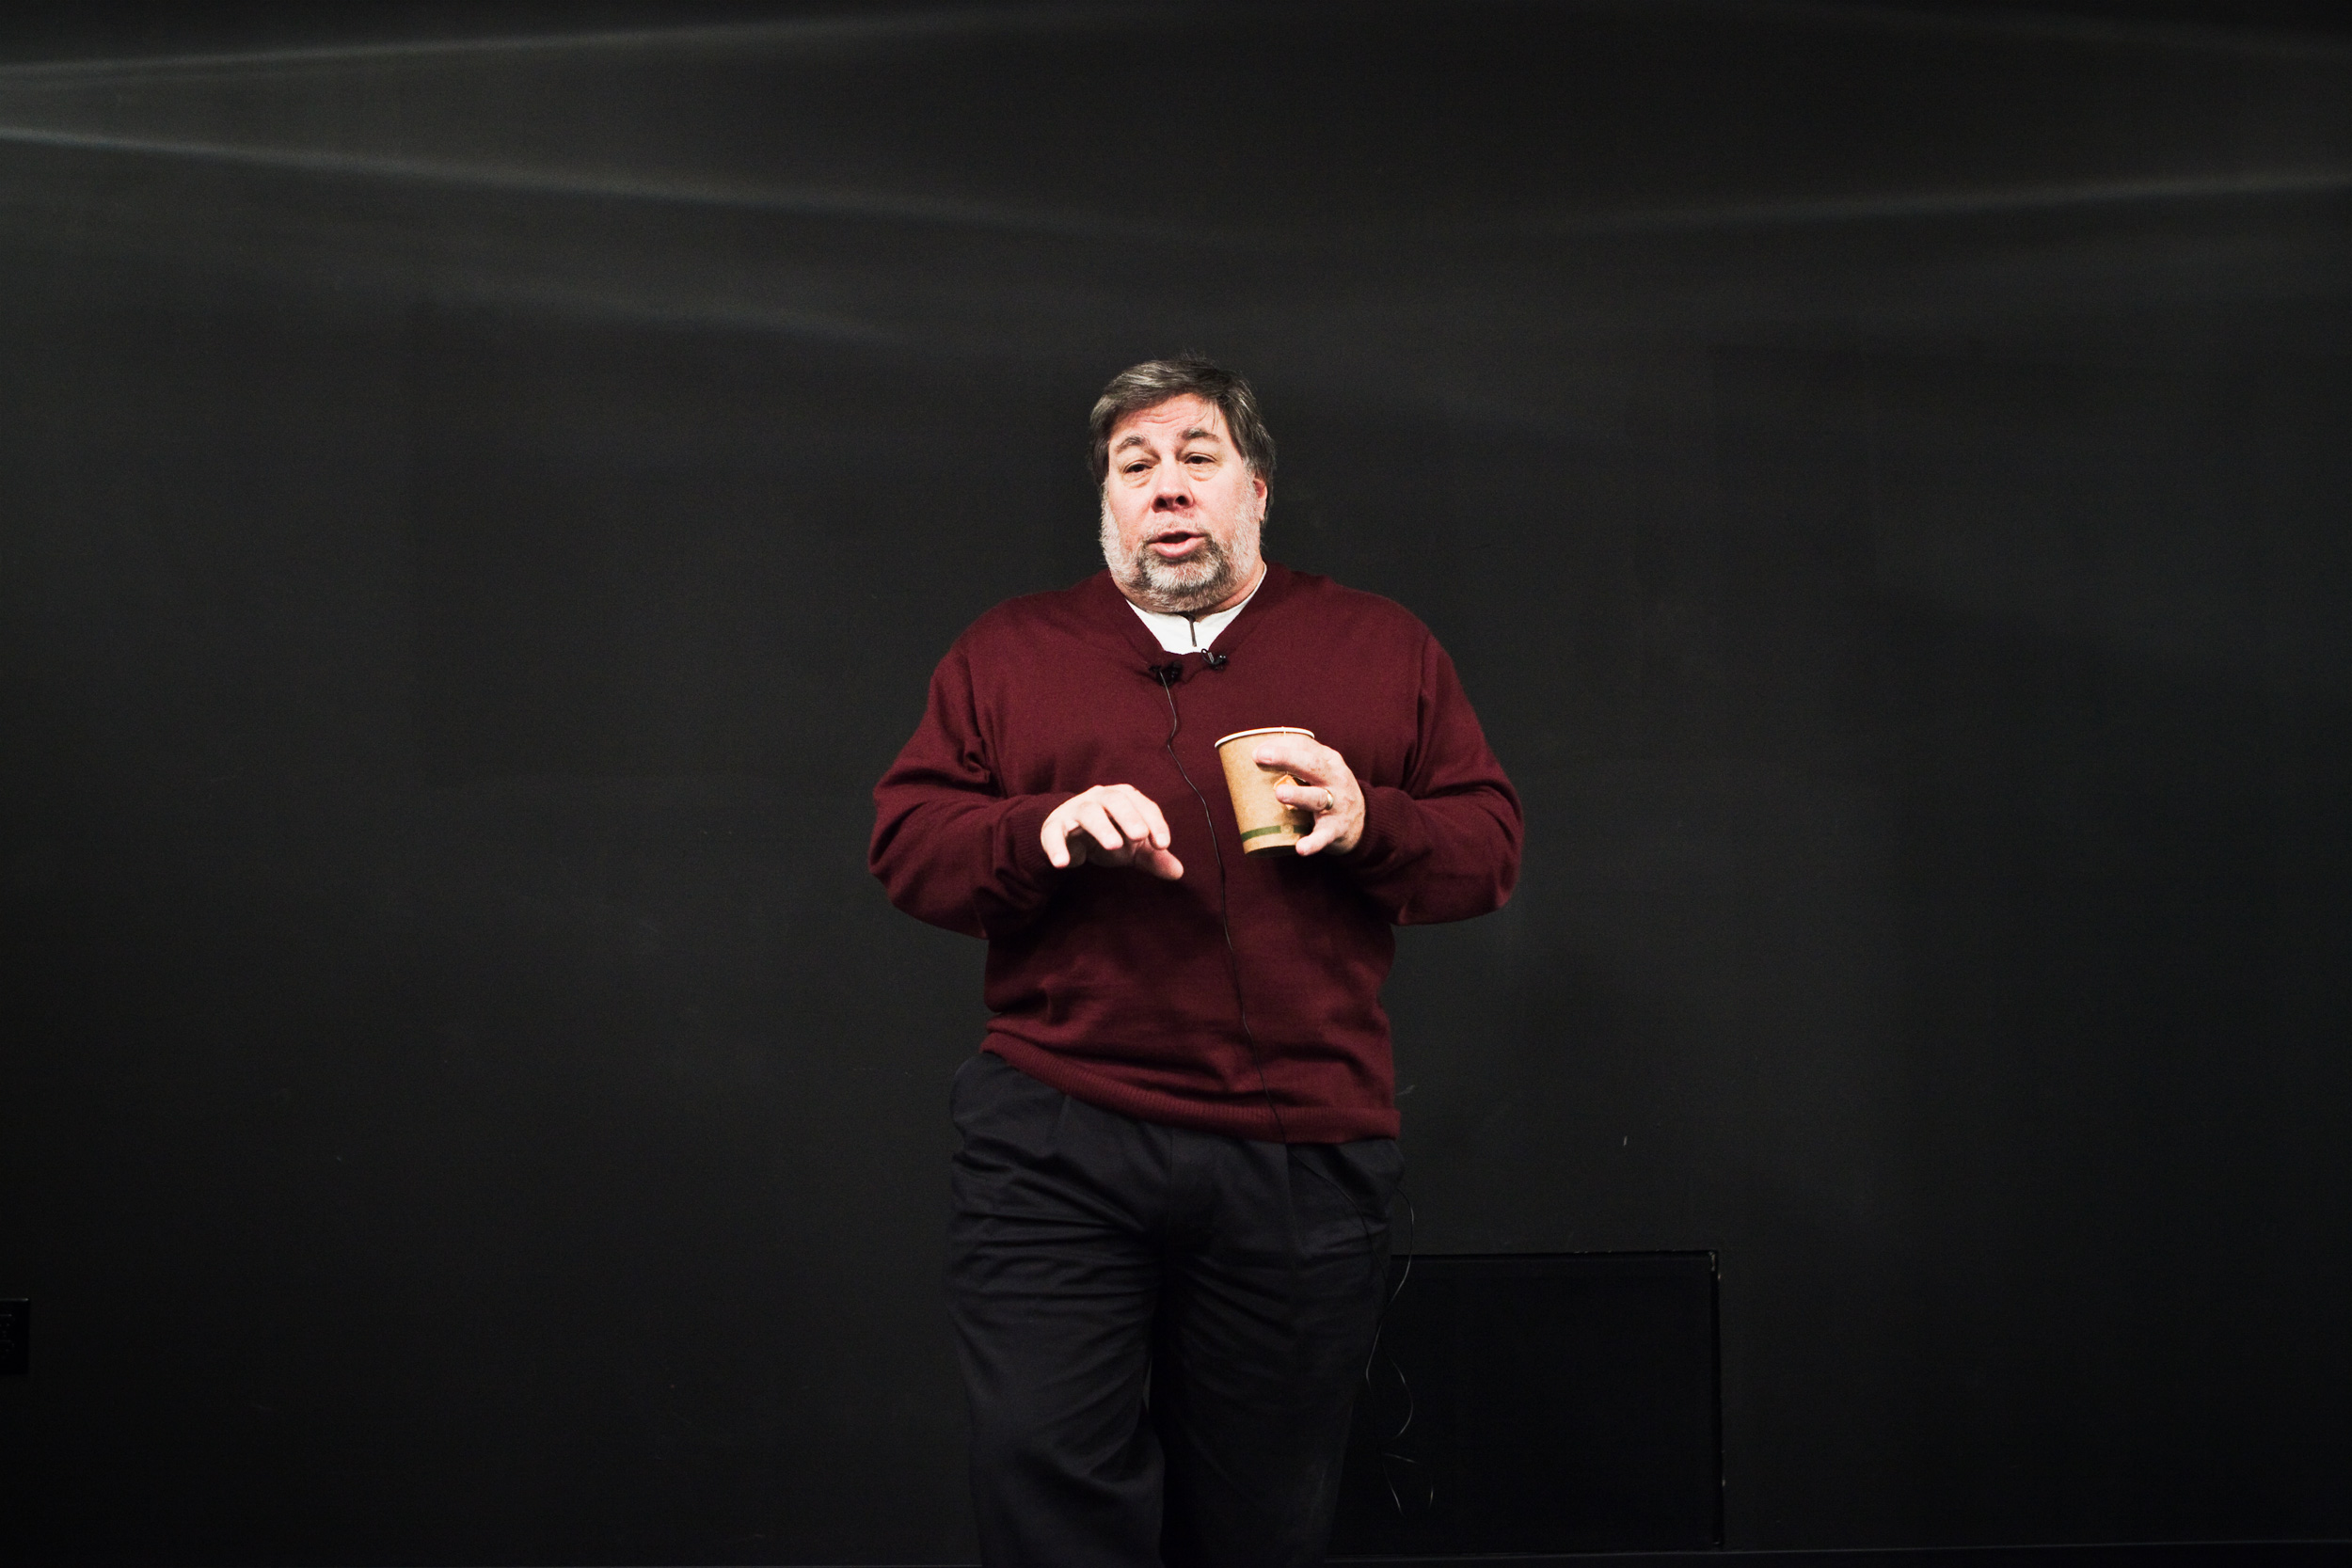 Charla de Steve Wozniak